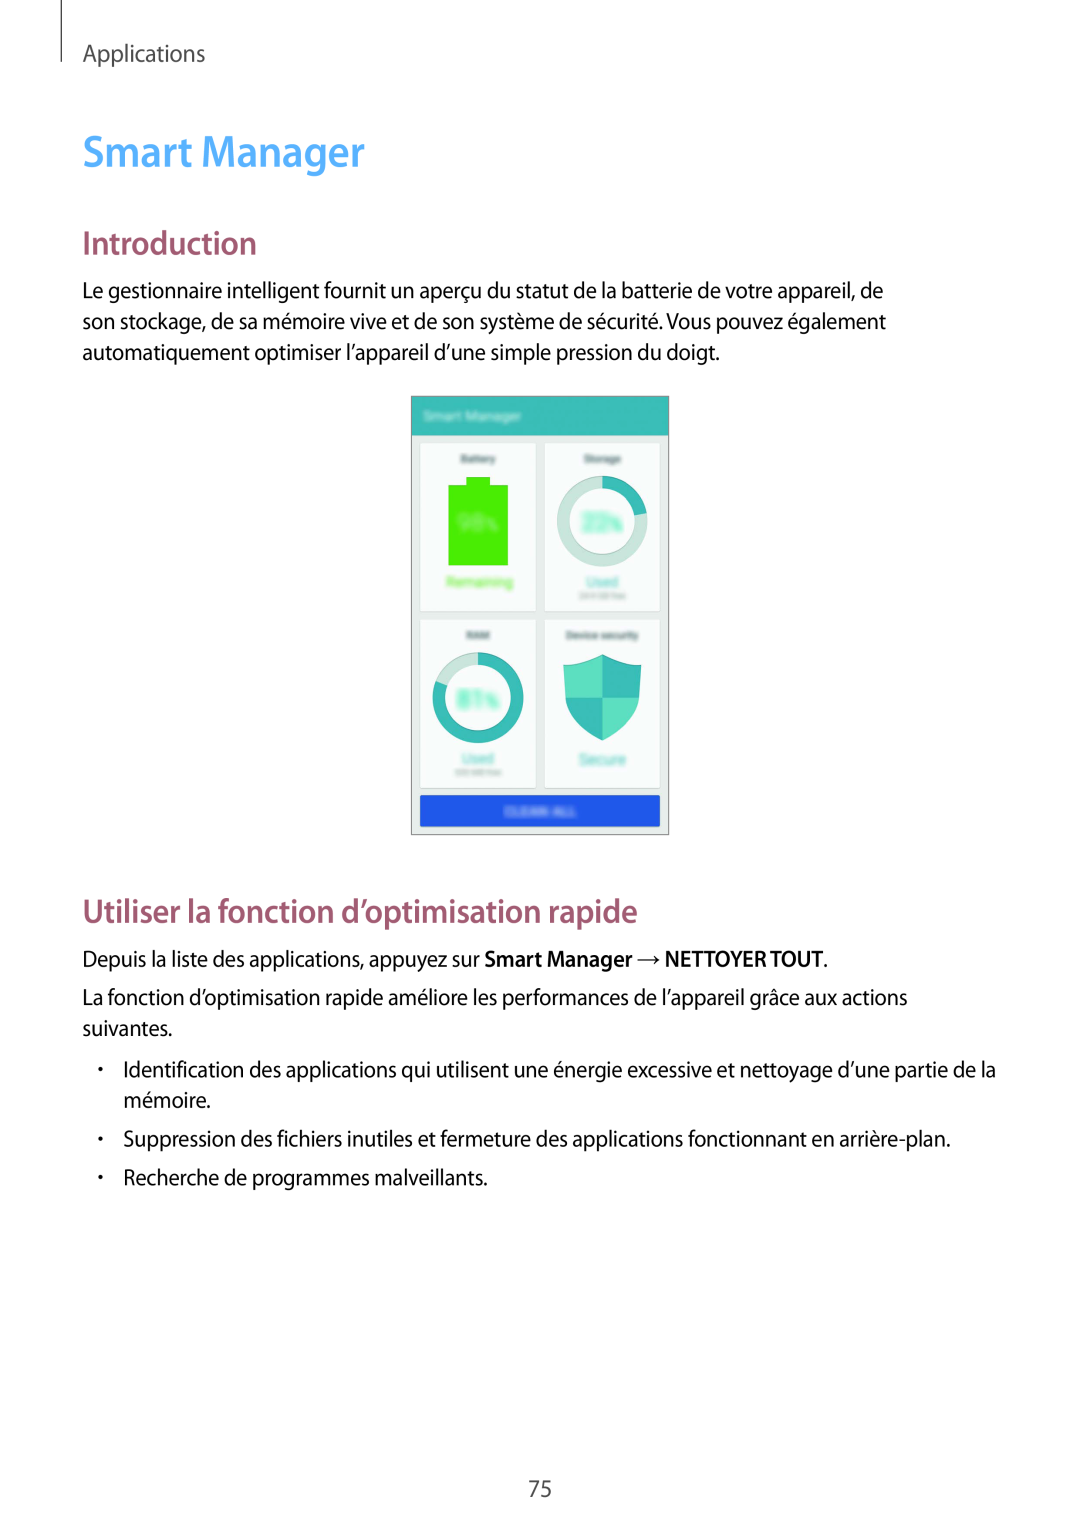 Samsung SM-G920FZDAXEF manual Smart Manager, Utiliser la fonction d’optimisation rapide, Introduction, Applications 